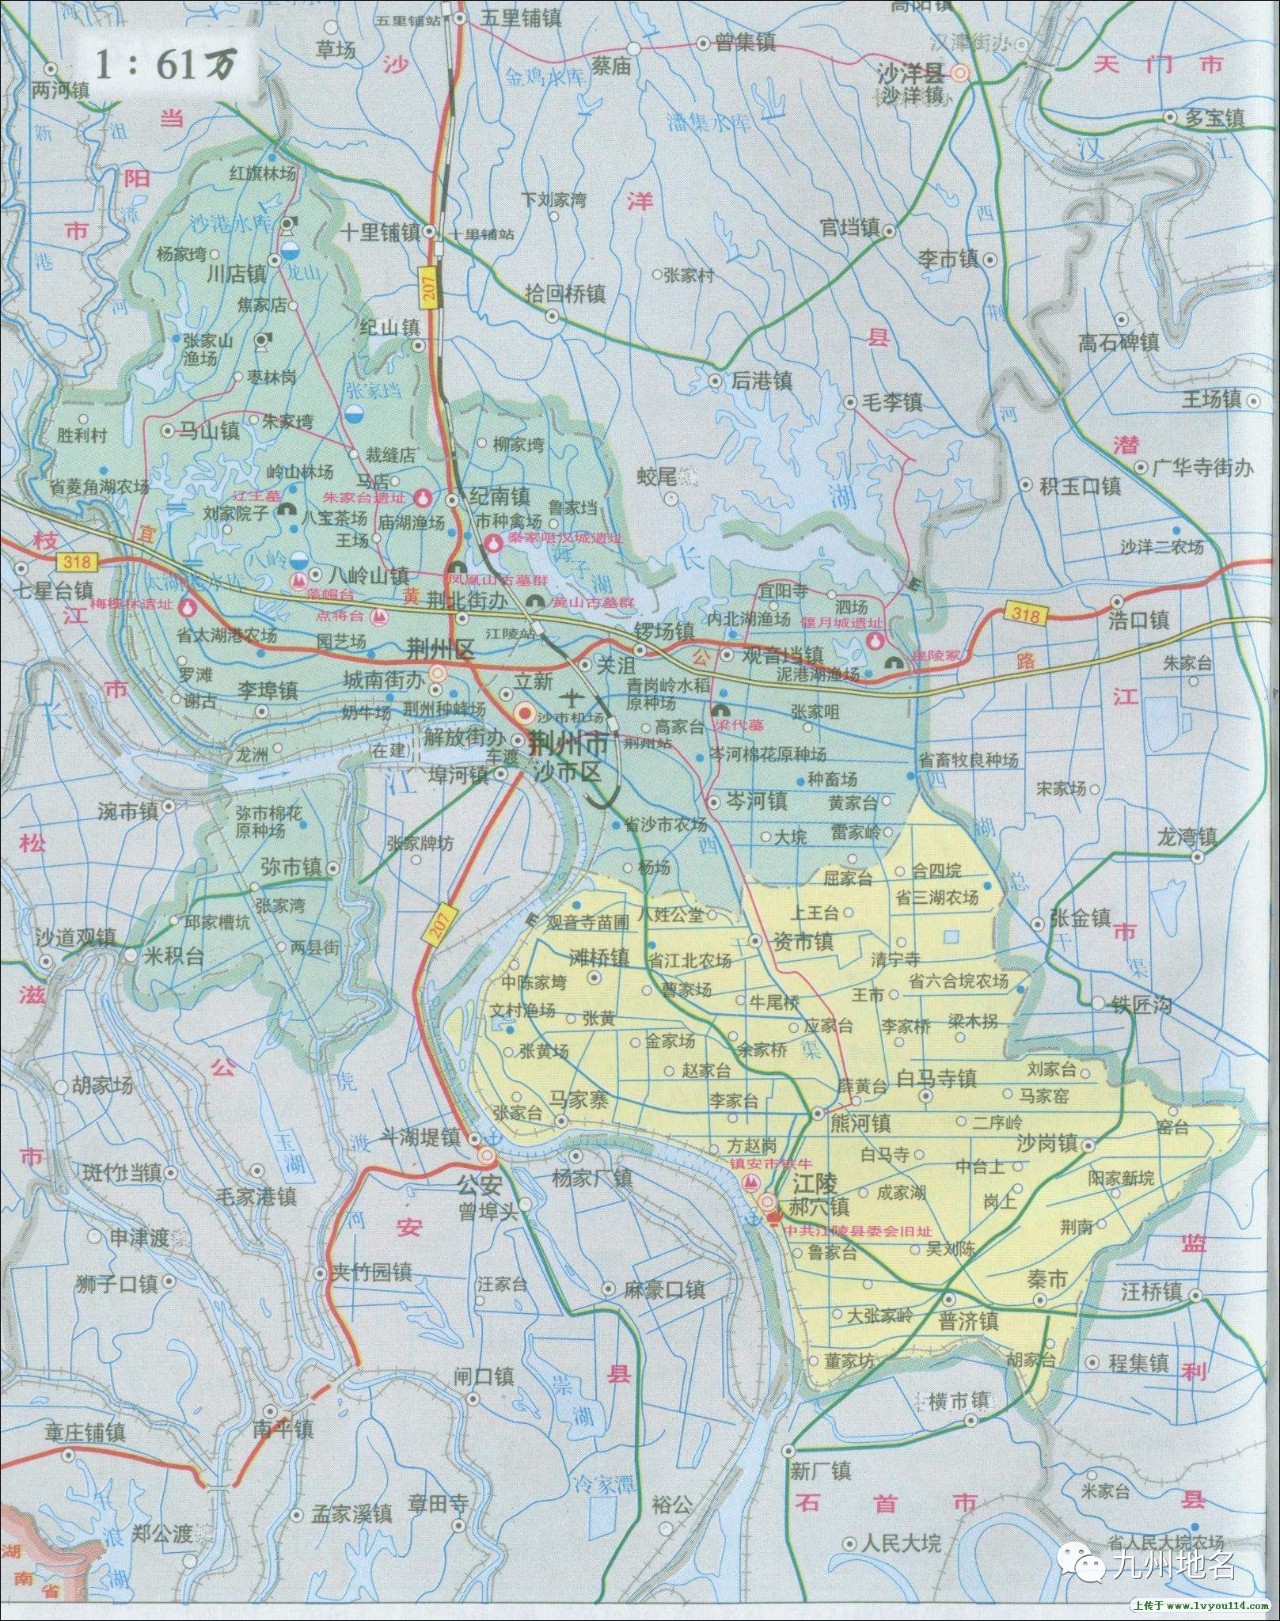 1954年,将张金,徐李两区划给潜江县;1994年10月,荆沙